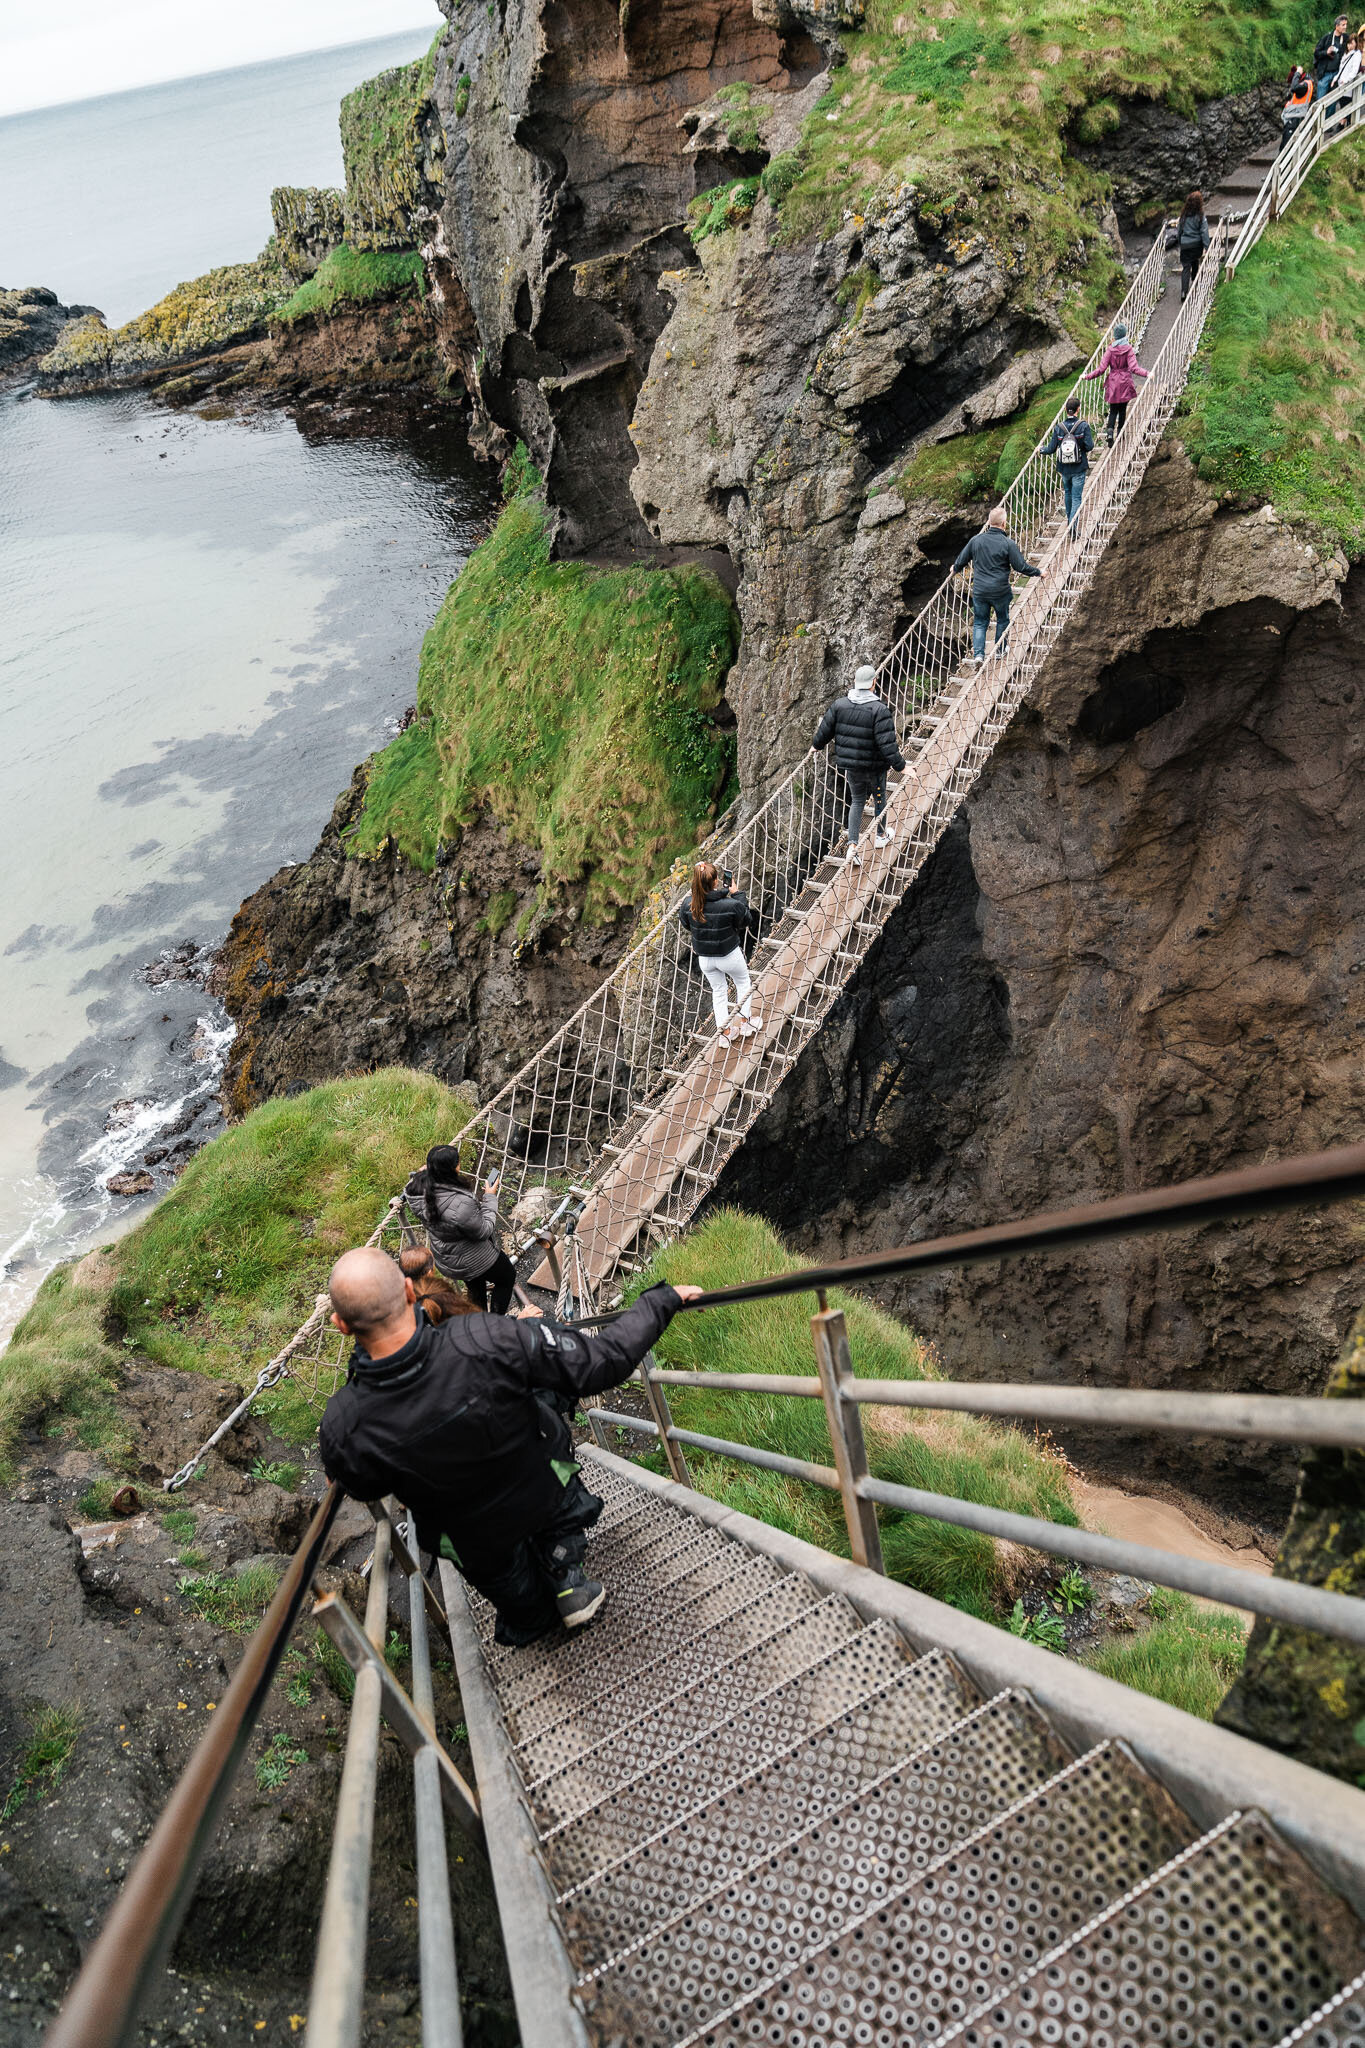 Alex-MJ-On-The-GO-Irlande-Carrick-a-rede-rope-bridge-en-ligne-pour-traverser.jpg